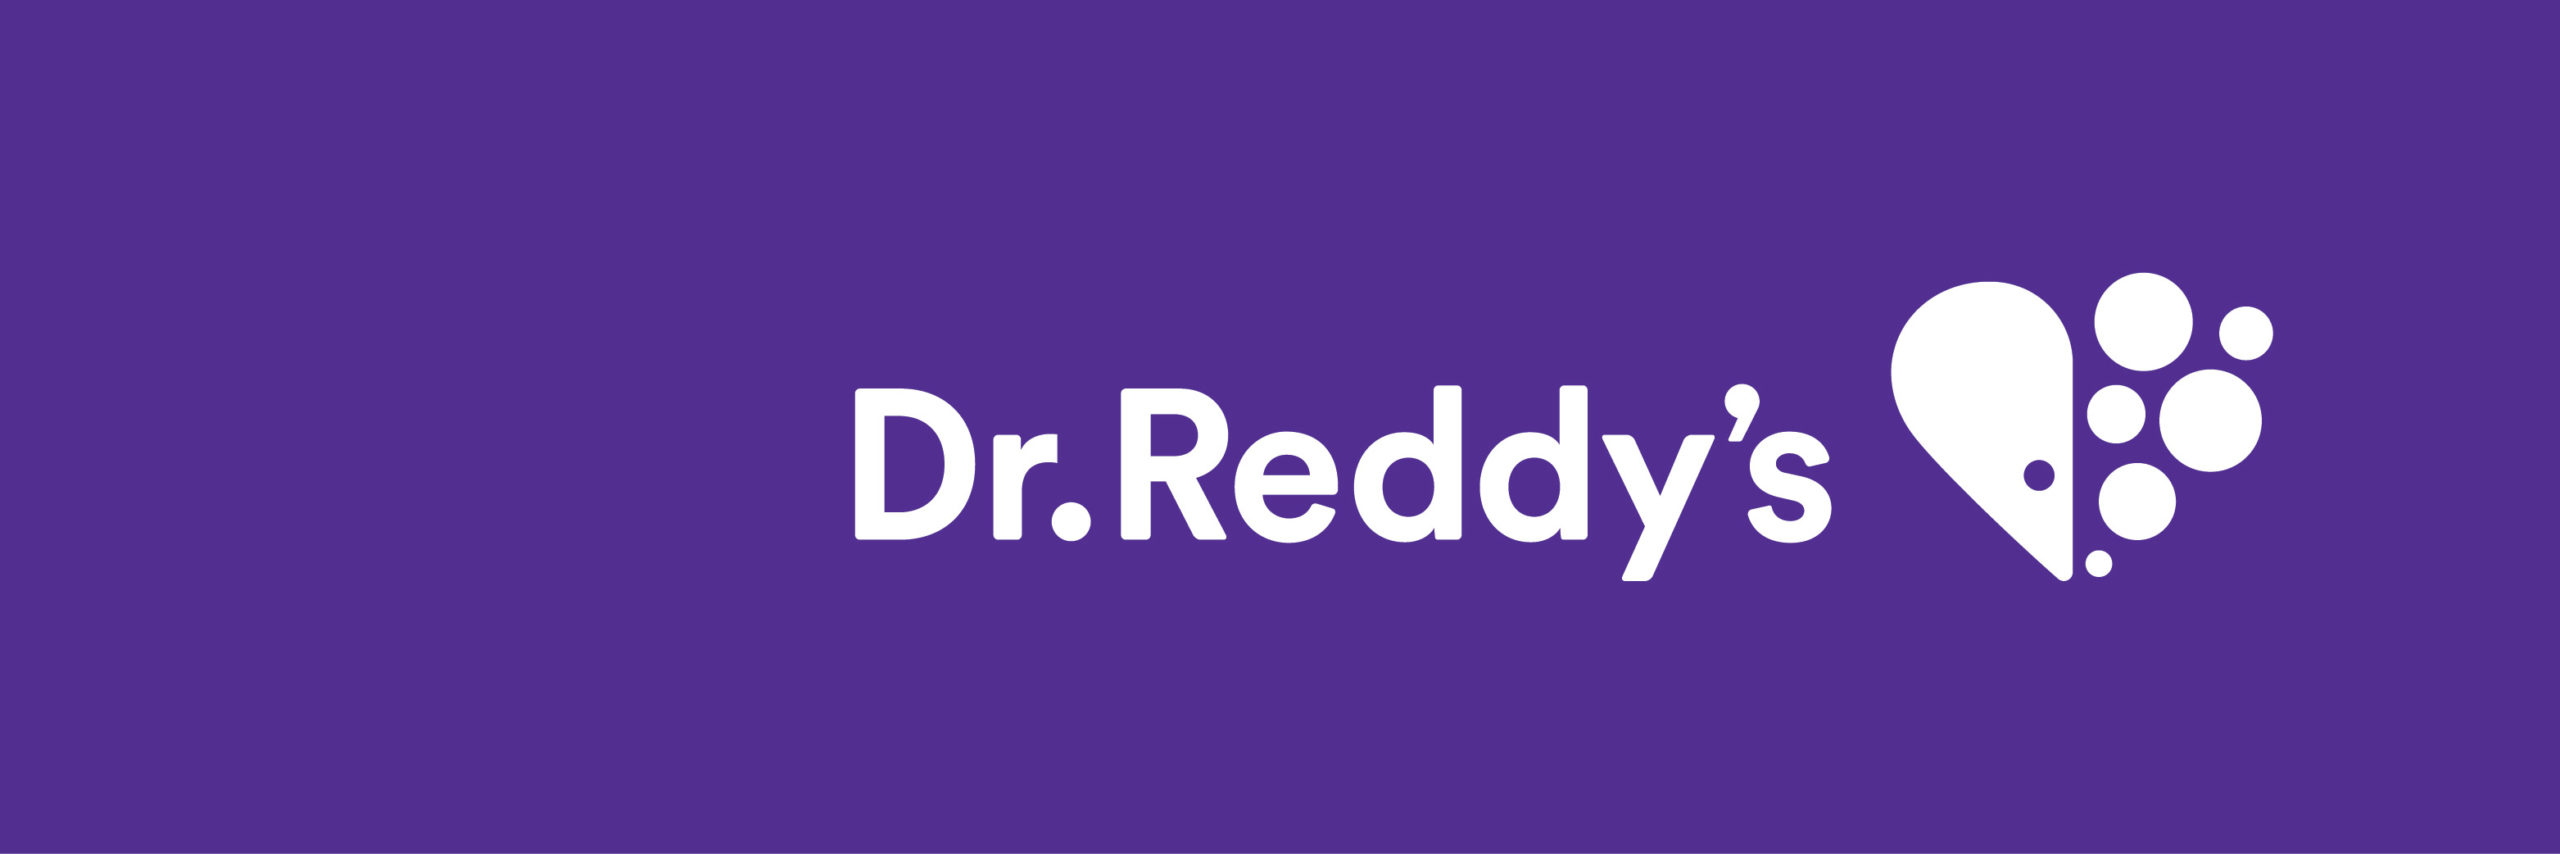 Dr.Reddy